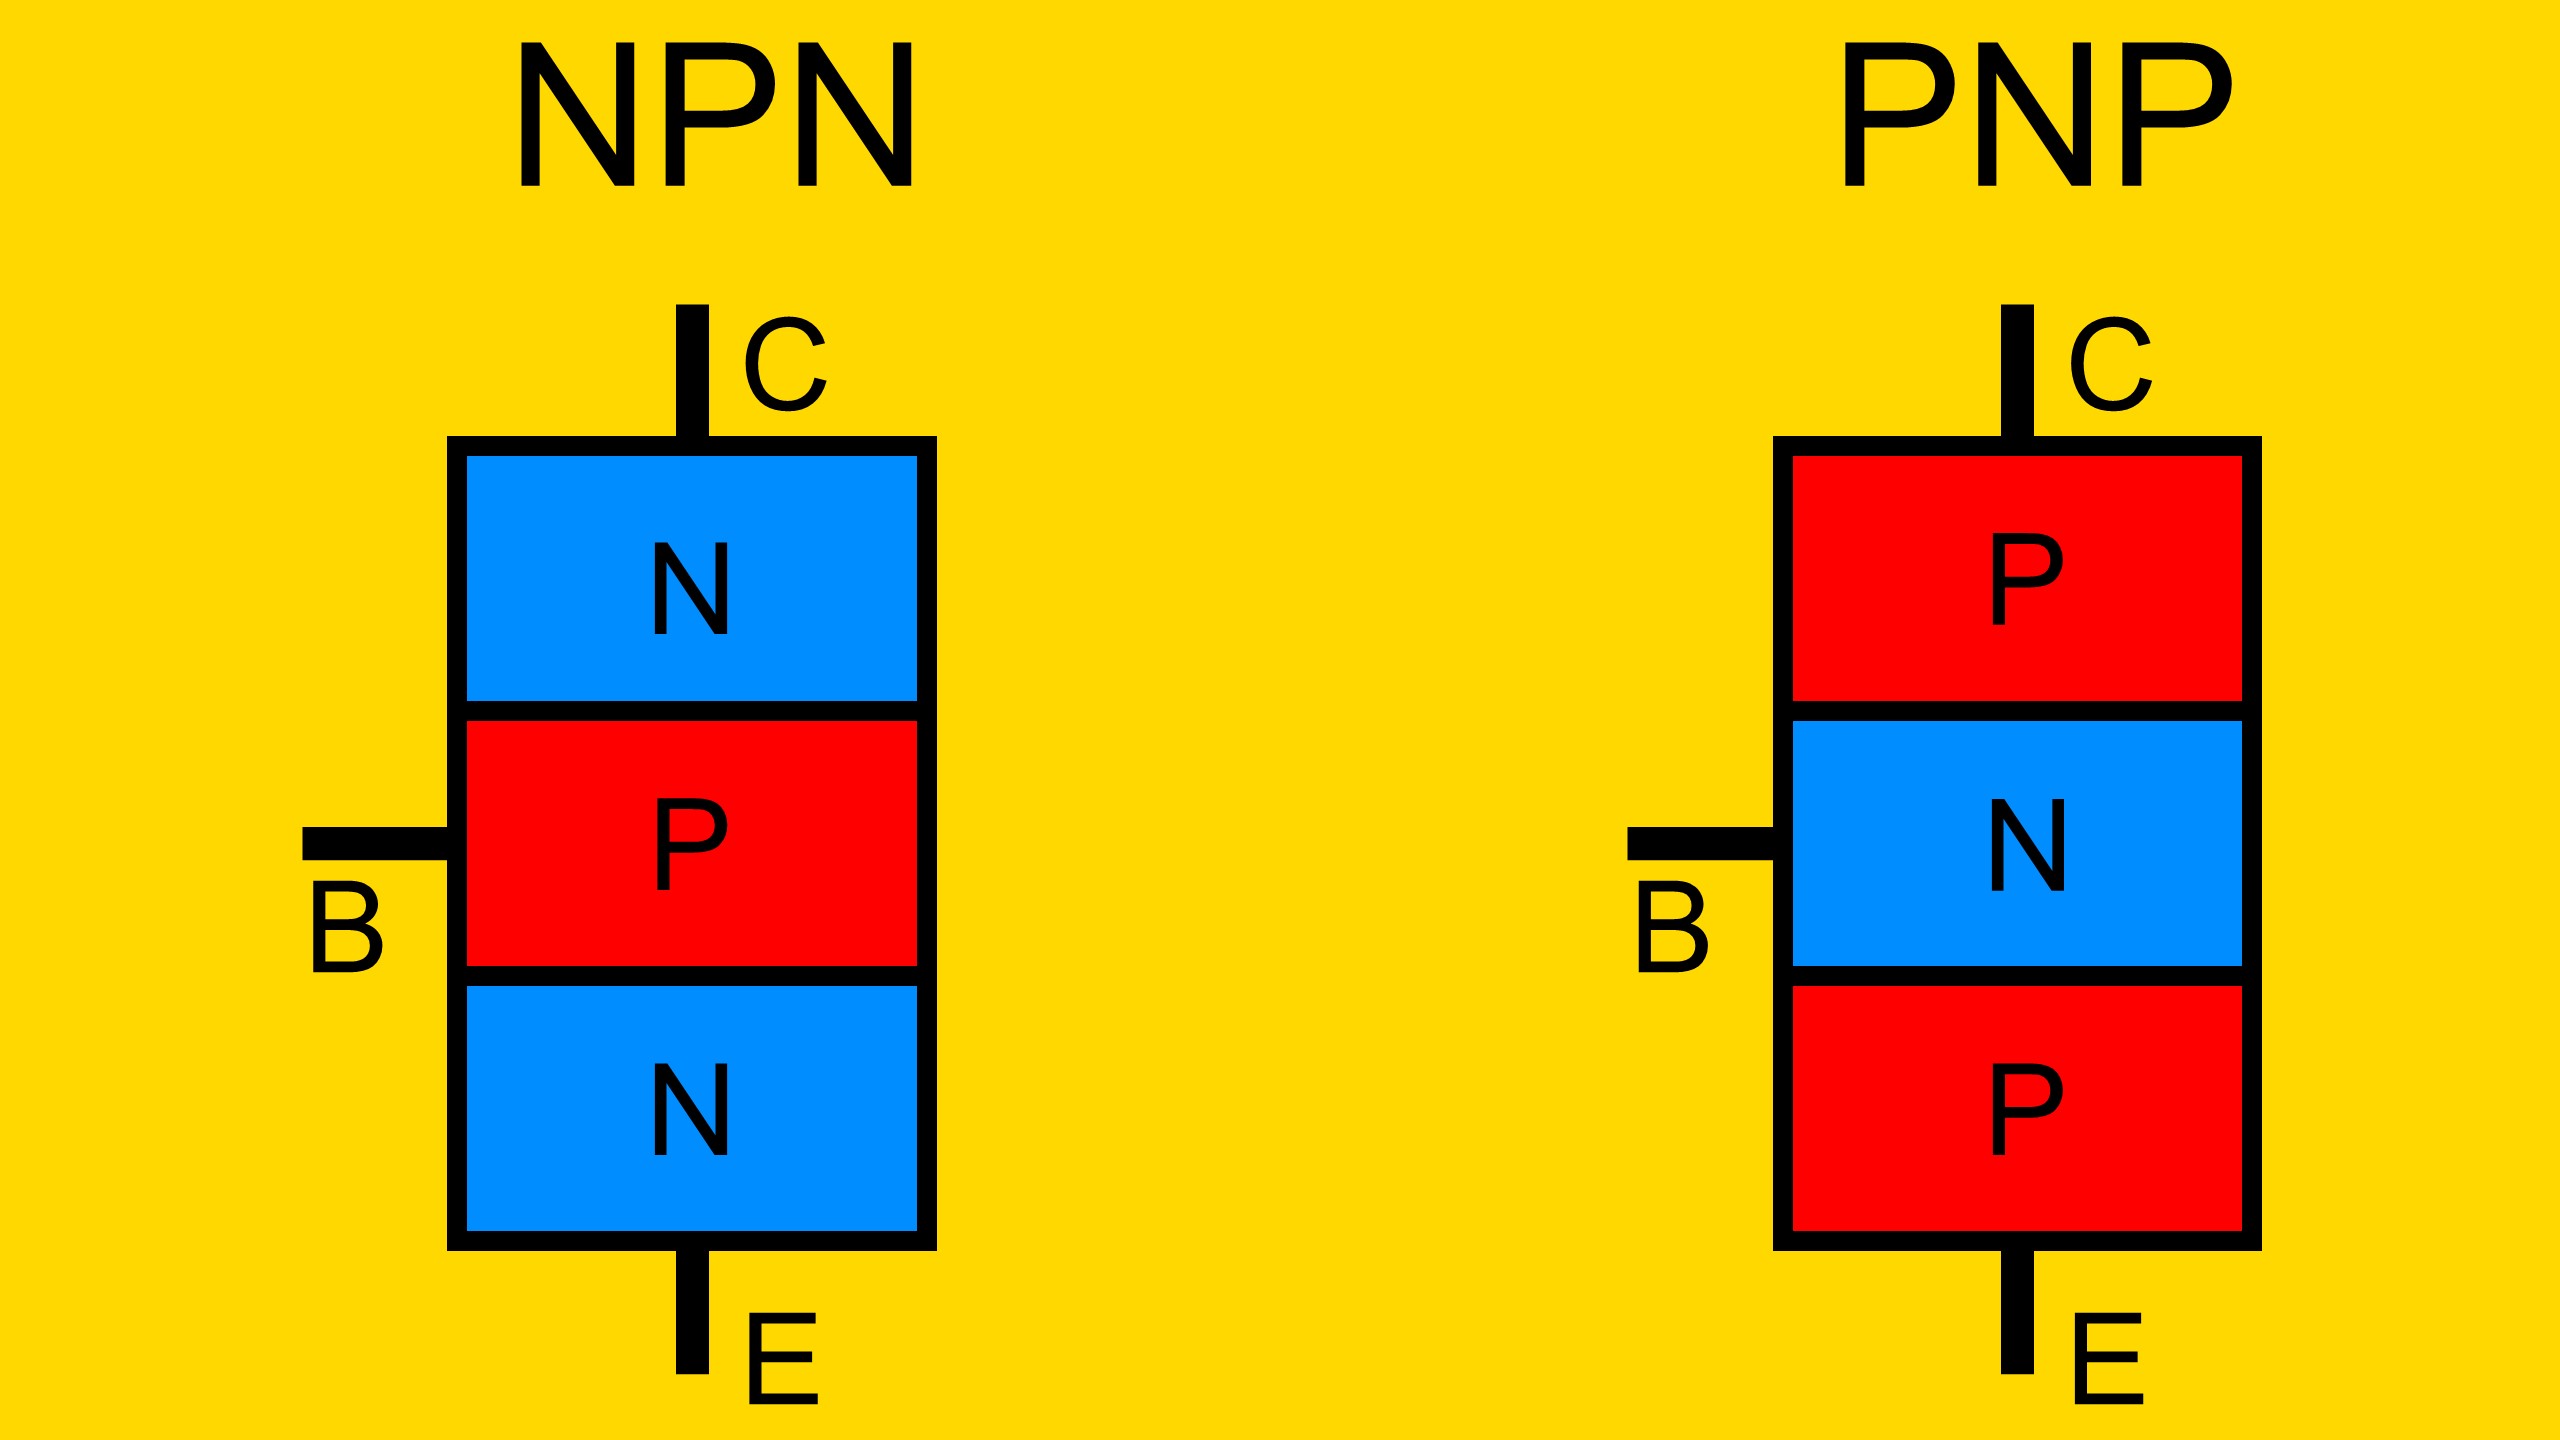 Das Bild zeigt den NPN und PNP Bipolartransistor